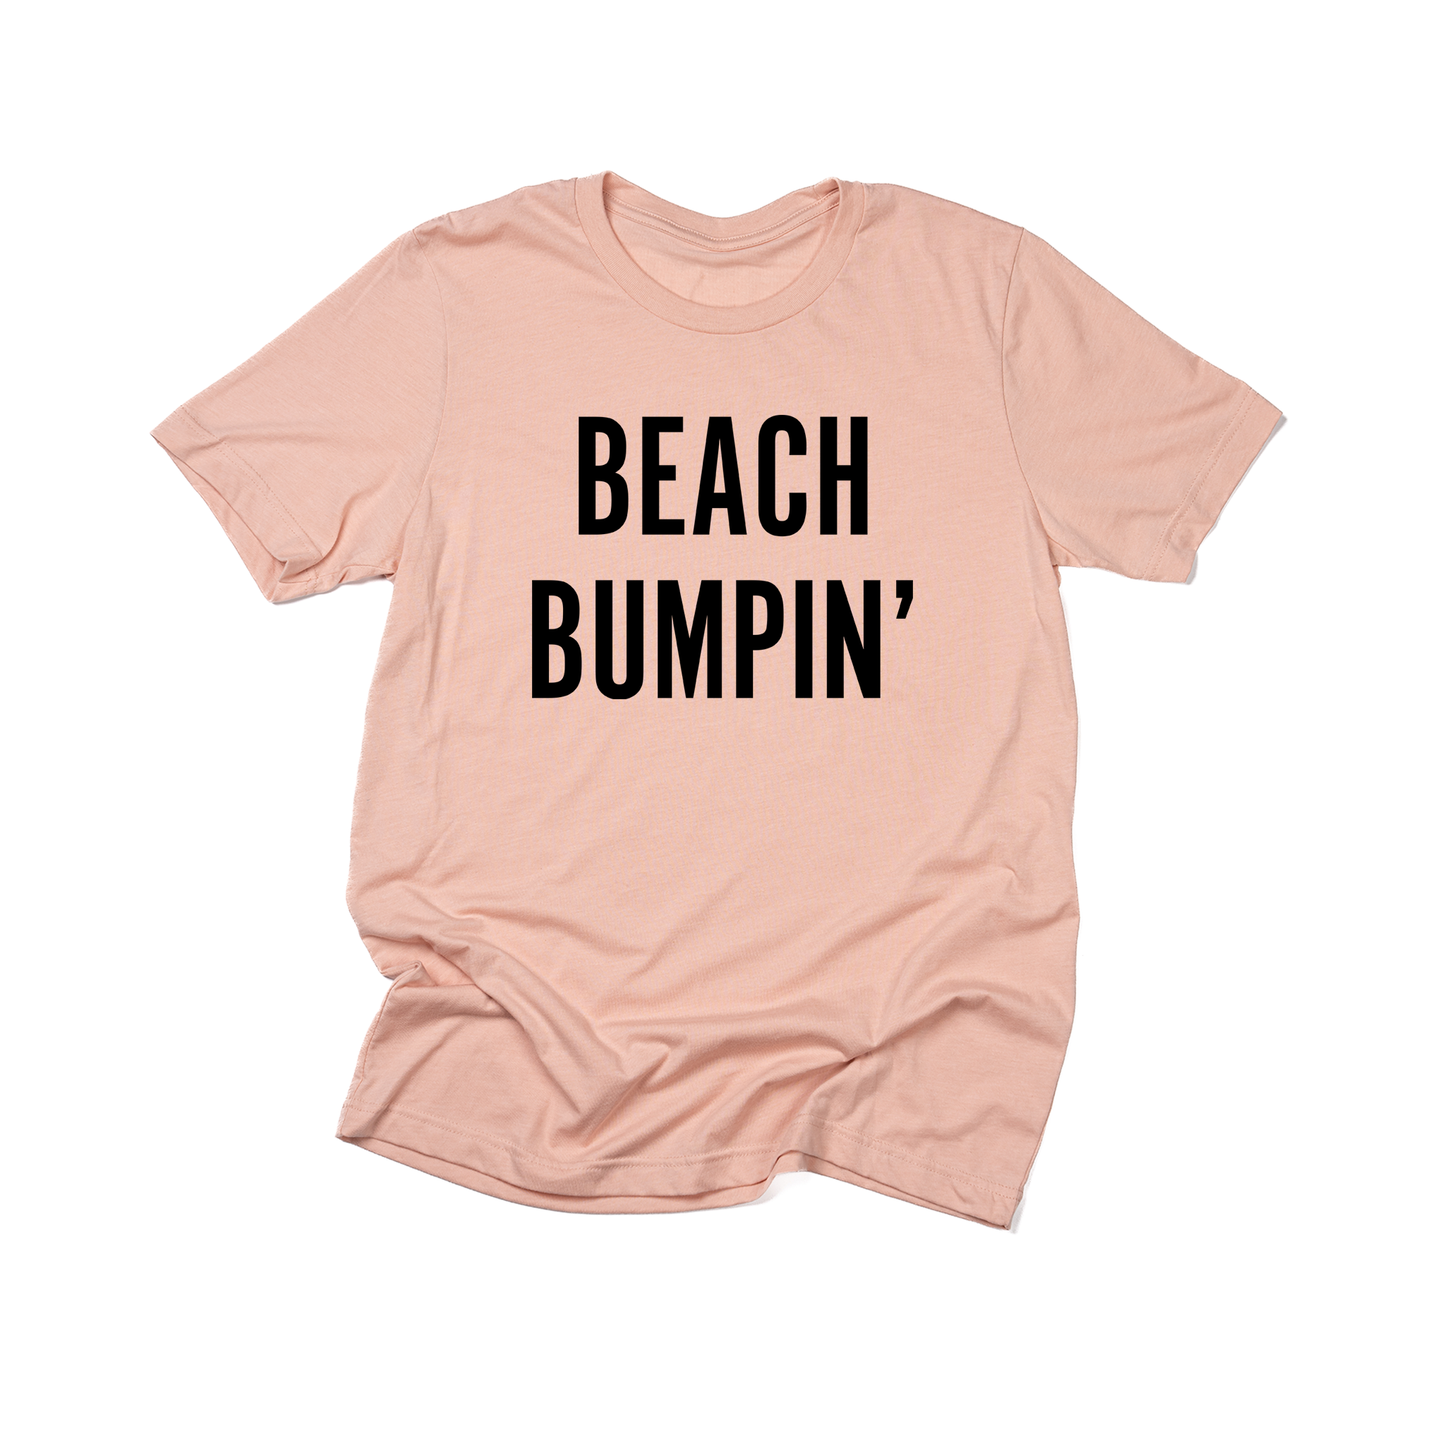 Beach Bumpin' (Black) - Tee (Peach)